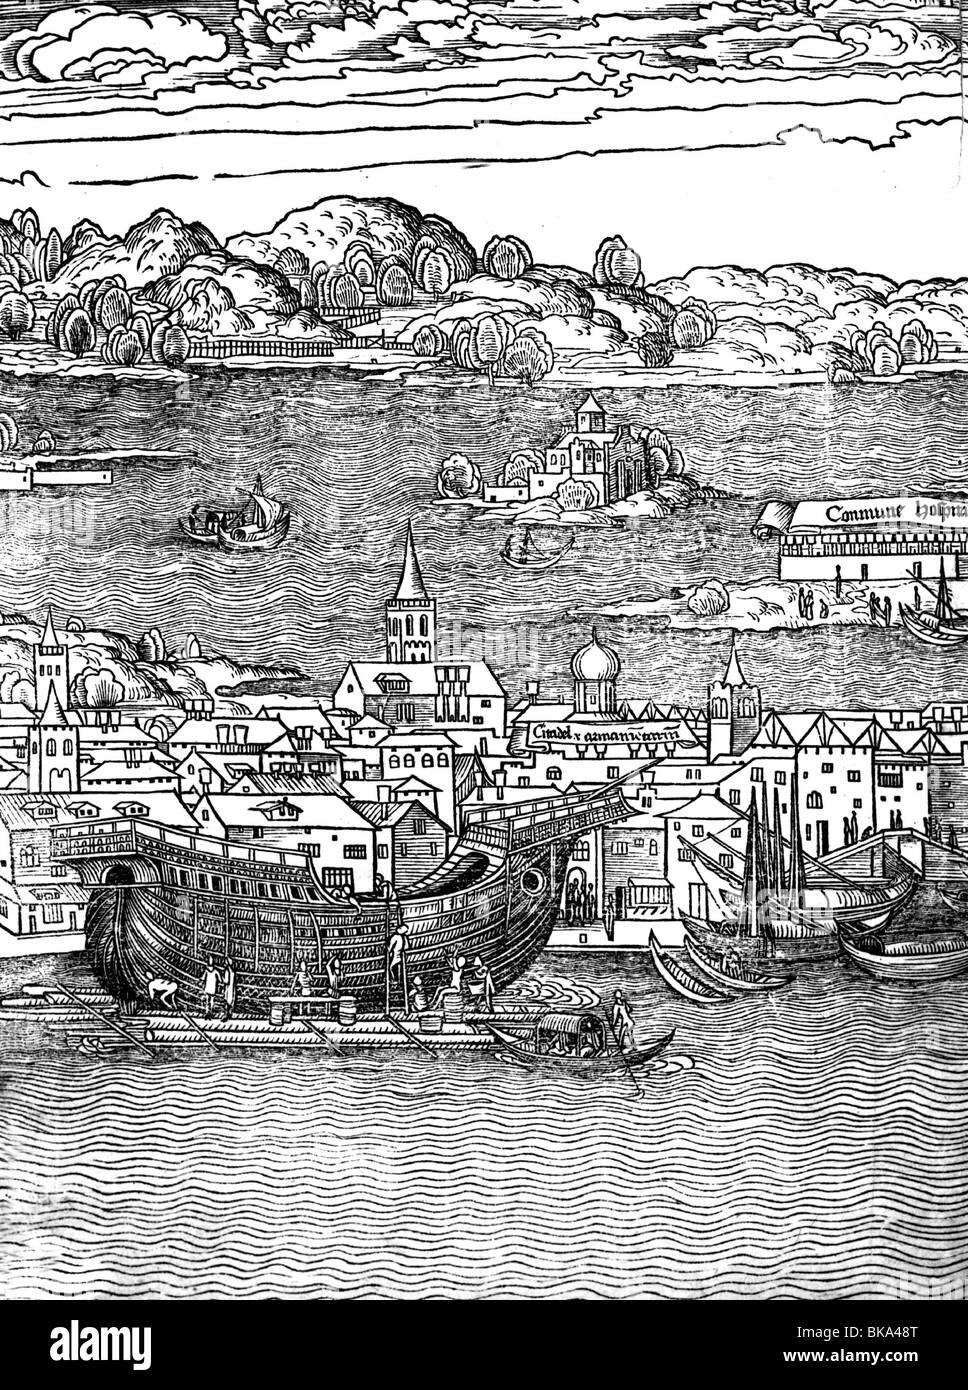 Geografia / viaggio, Italia, Venezia, Arsenal (armeria), costruzione navale in cantiere, taglio del legno dell'itinerario di Bernhard von Breidenbach, 1490, Foto Stock